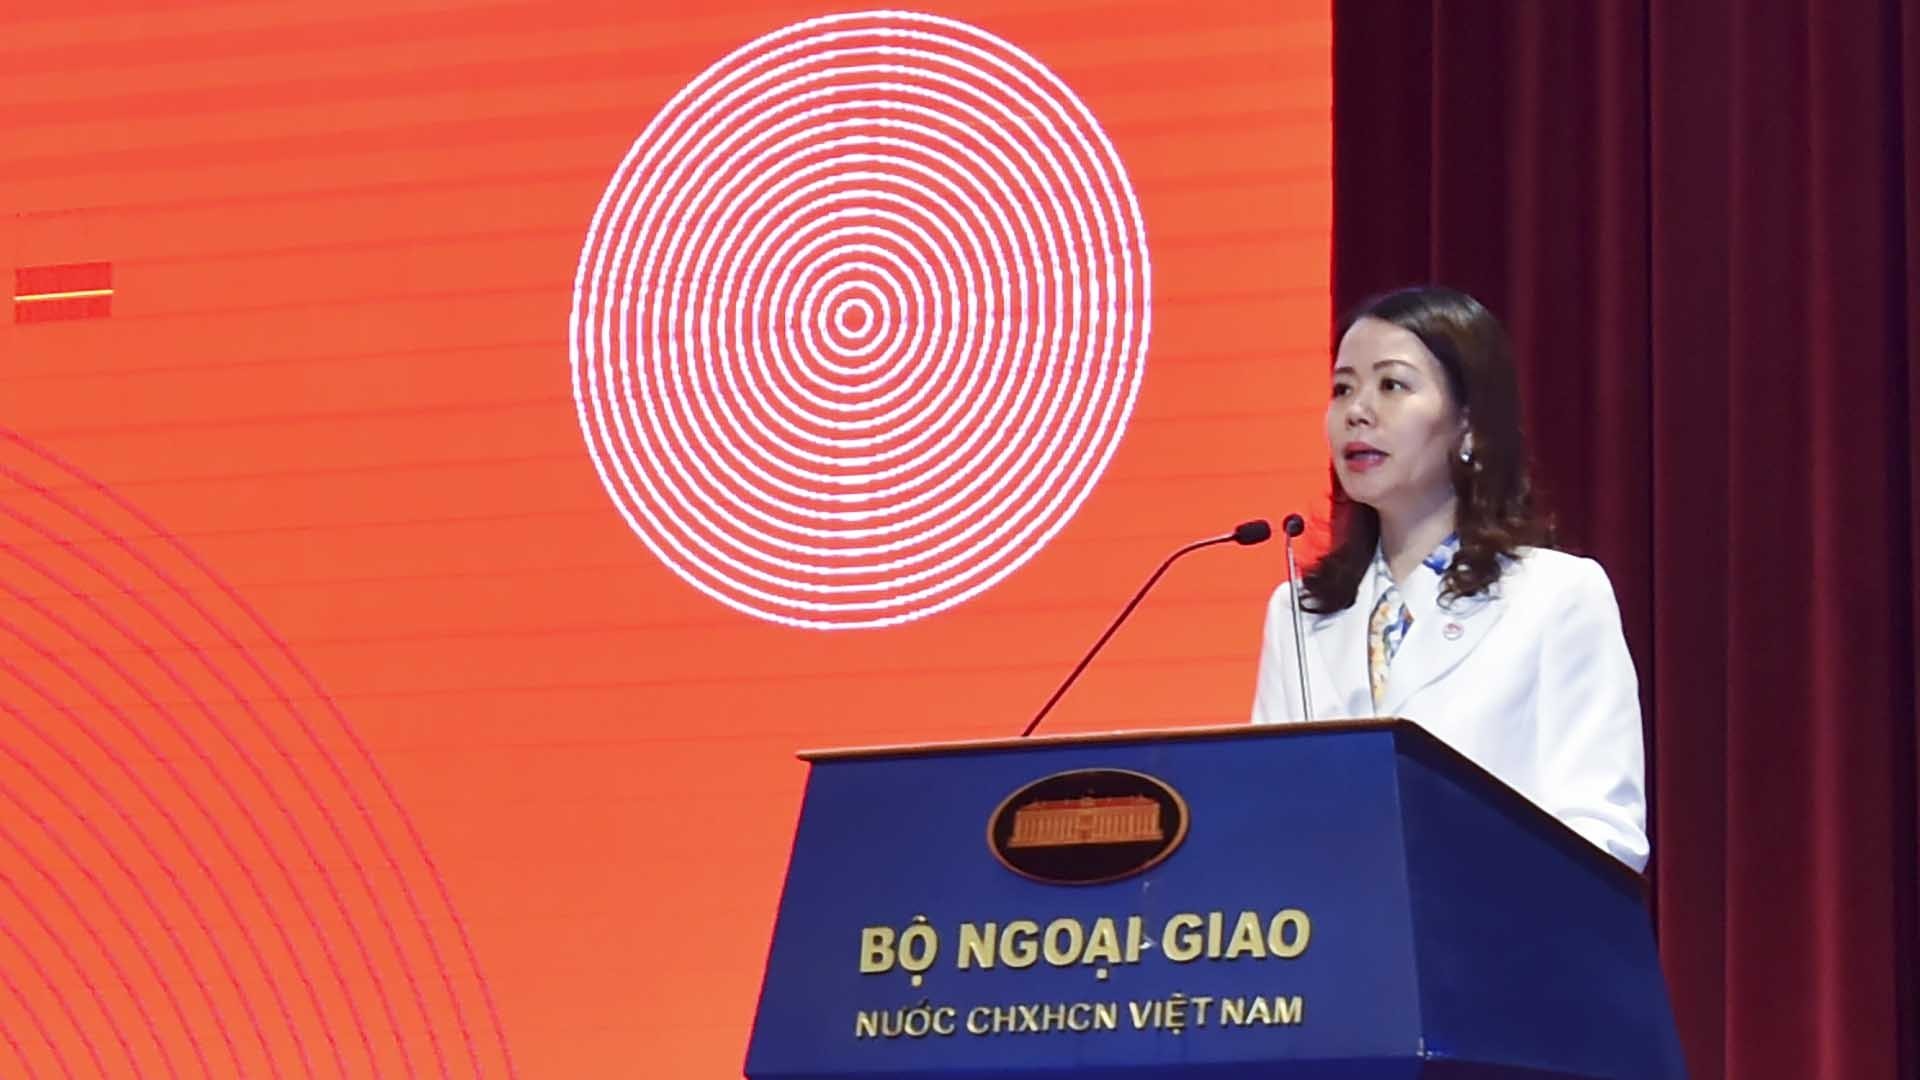 Thứ trưởng Nguyễn Minh Hằng: Ngoại giao kinh tế kiến tạo cơ hội mới cho đất nước!